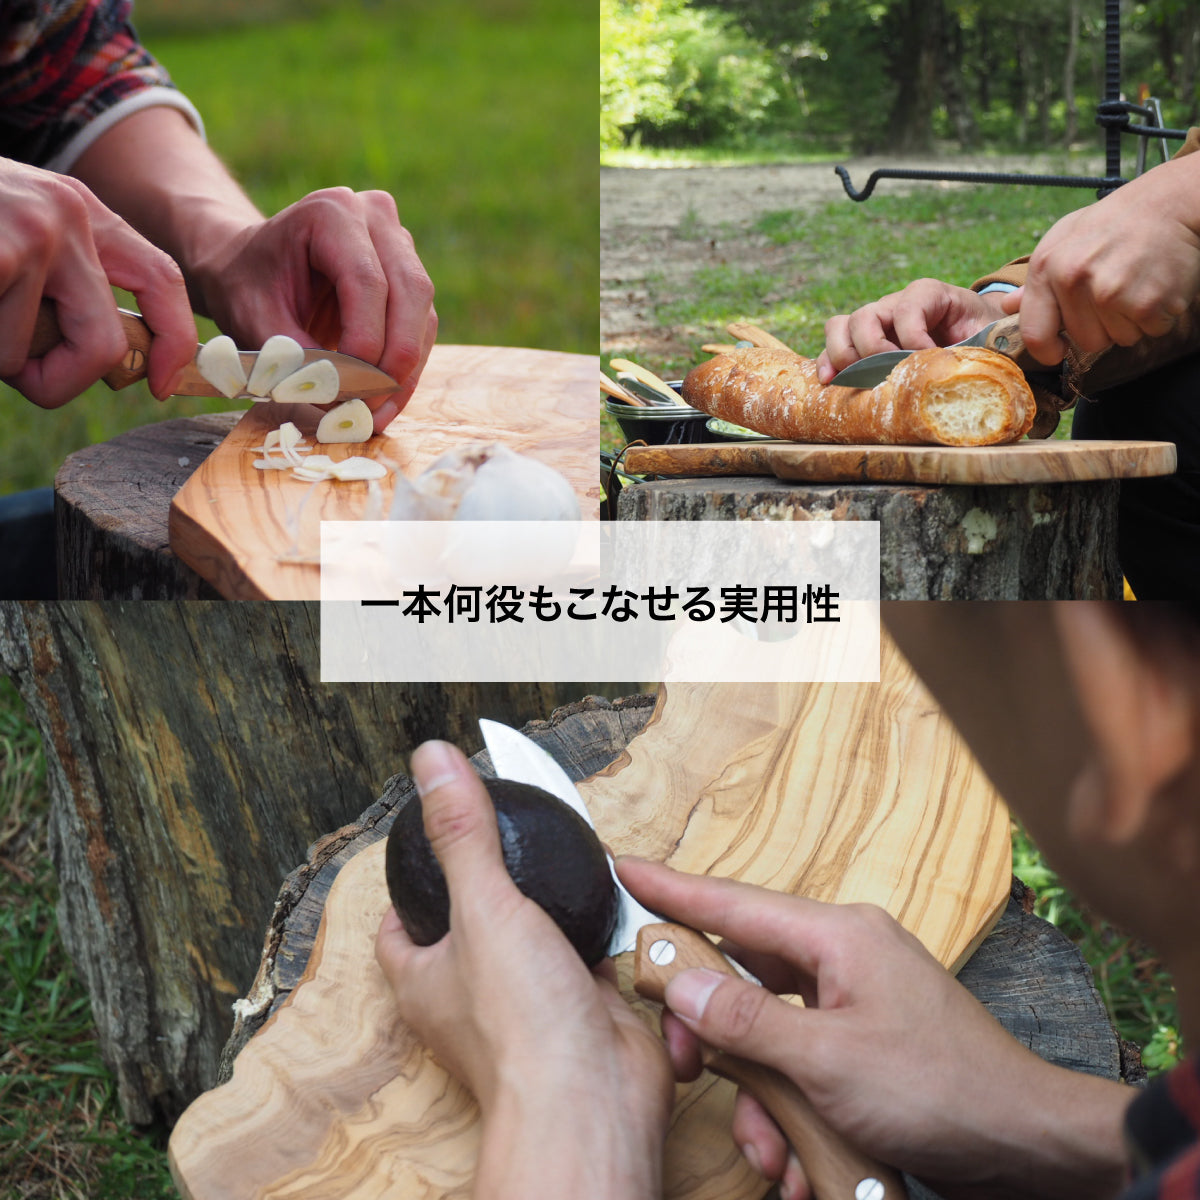 折畳式料理ナイフSolo プレーンブラック (ステンレス鋼/銀紙三号) 9,900円